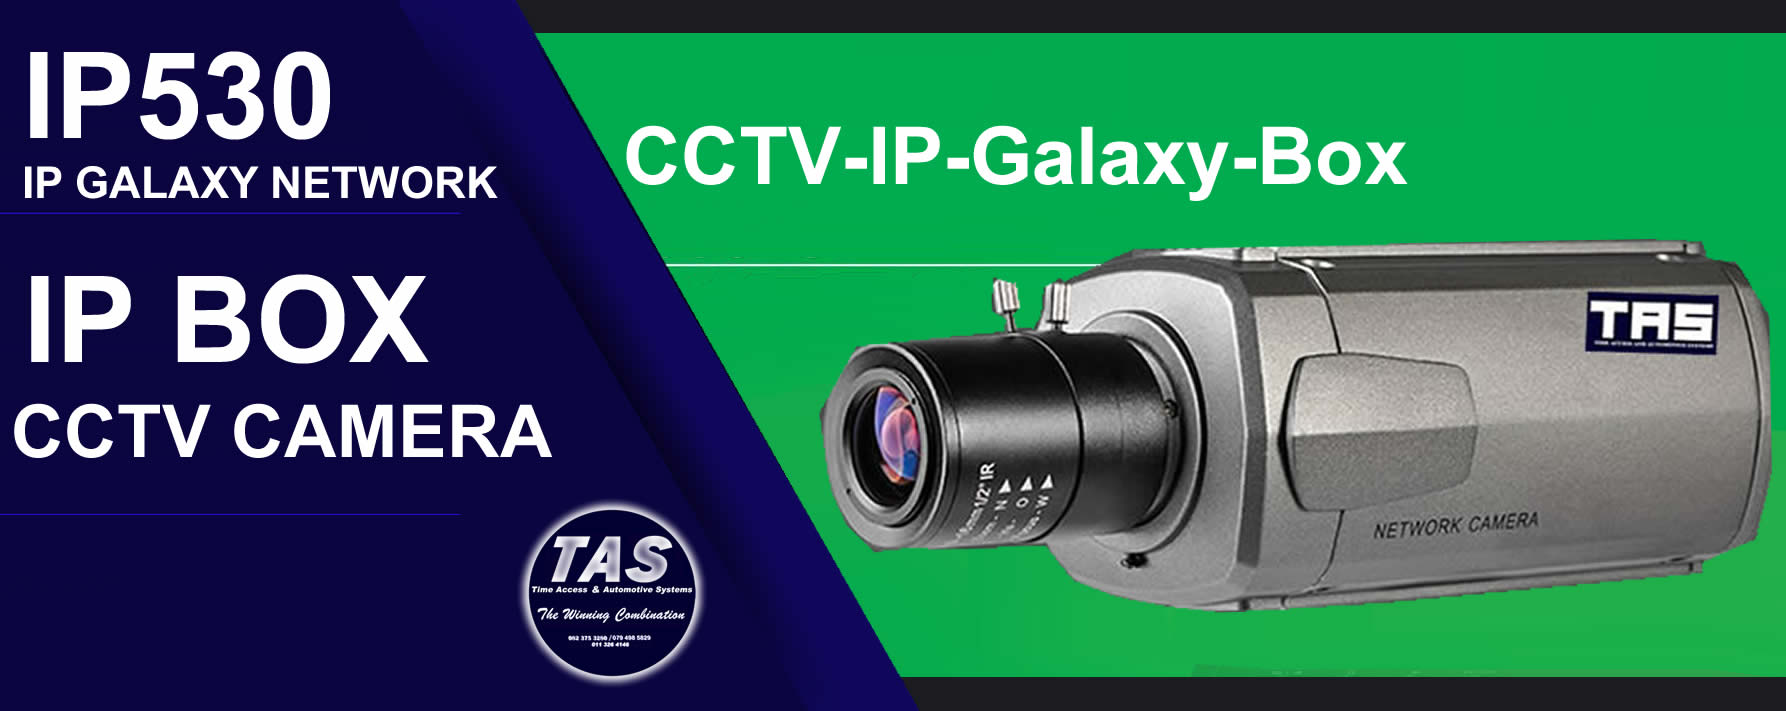 ip530 CCTV glalaxy-box-Cameras-security control banner